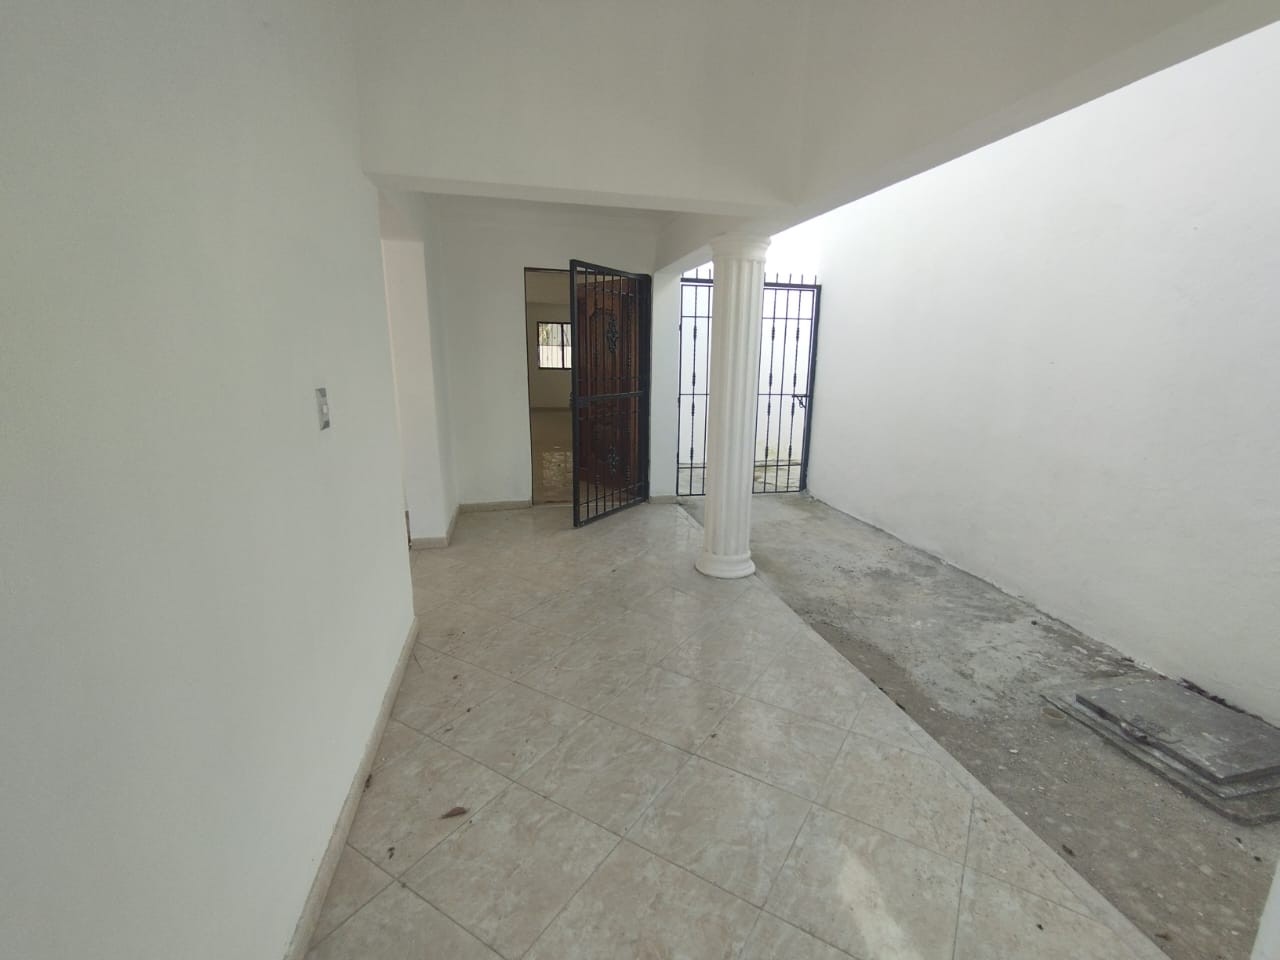 casas - Se Vende Casa en Los Rios Sector Colinas del Seminario.
200mst
RD$15,500.000